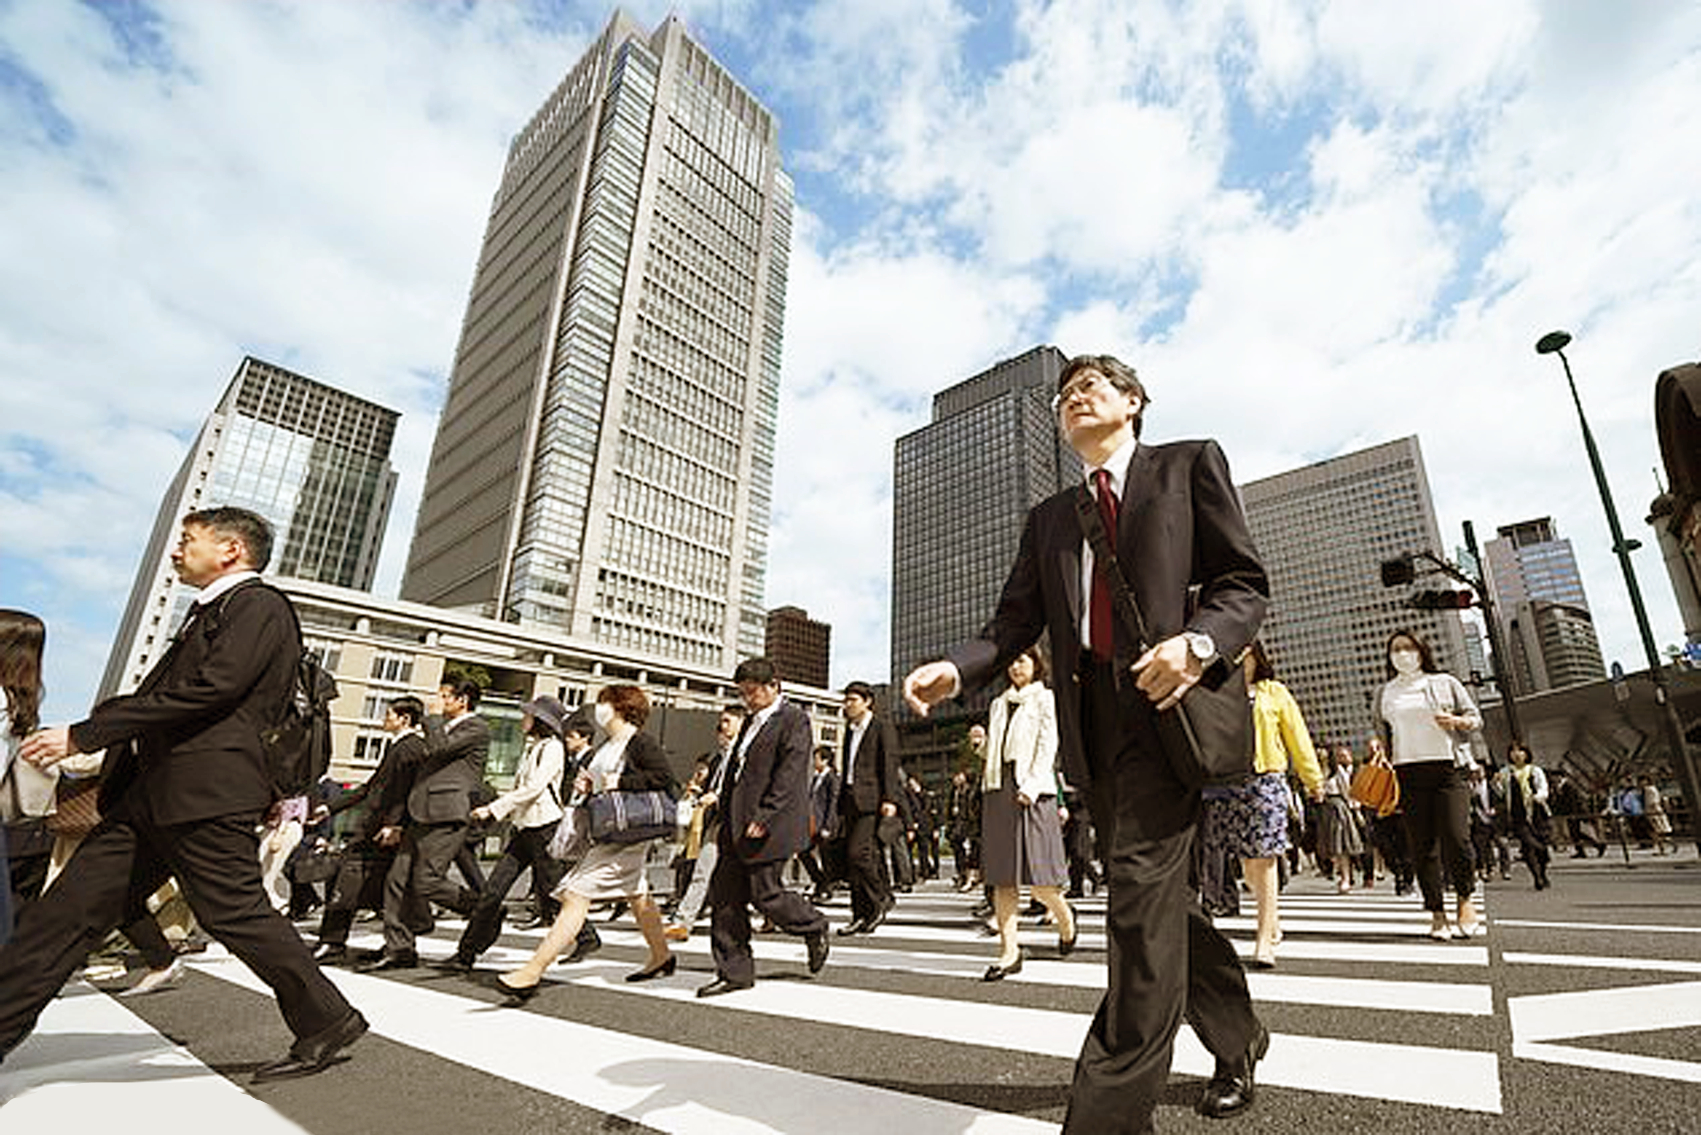 Nhiều công ty Nhật Bản chuyển sang chế độ làm việc 4 ngày/tuần để cân bằng công việc và cuộc sống cho nhân viên - ẢNH: GETTY IMAGES